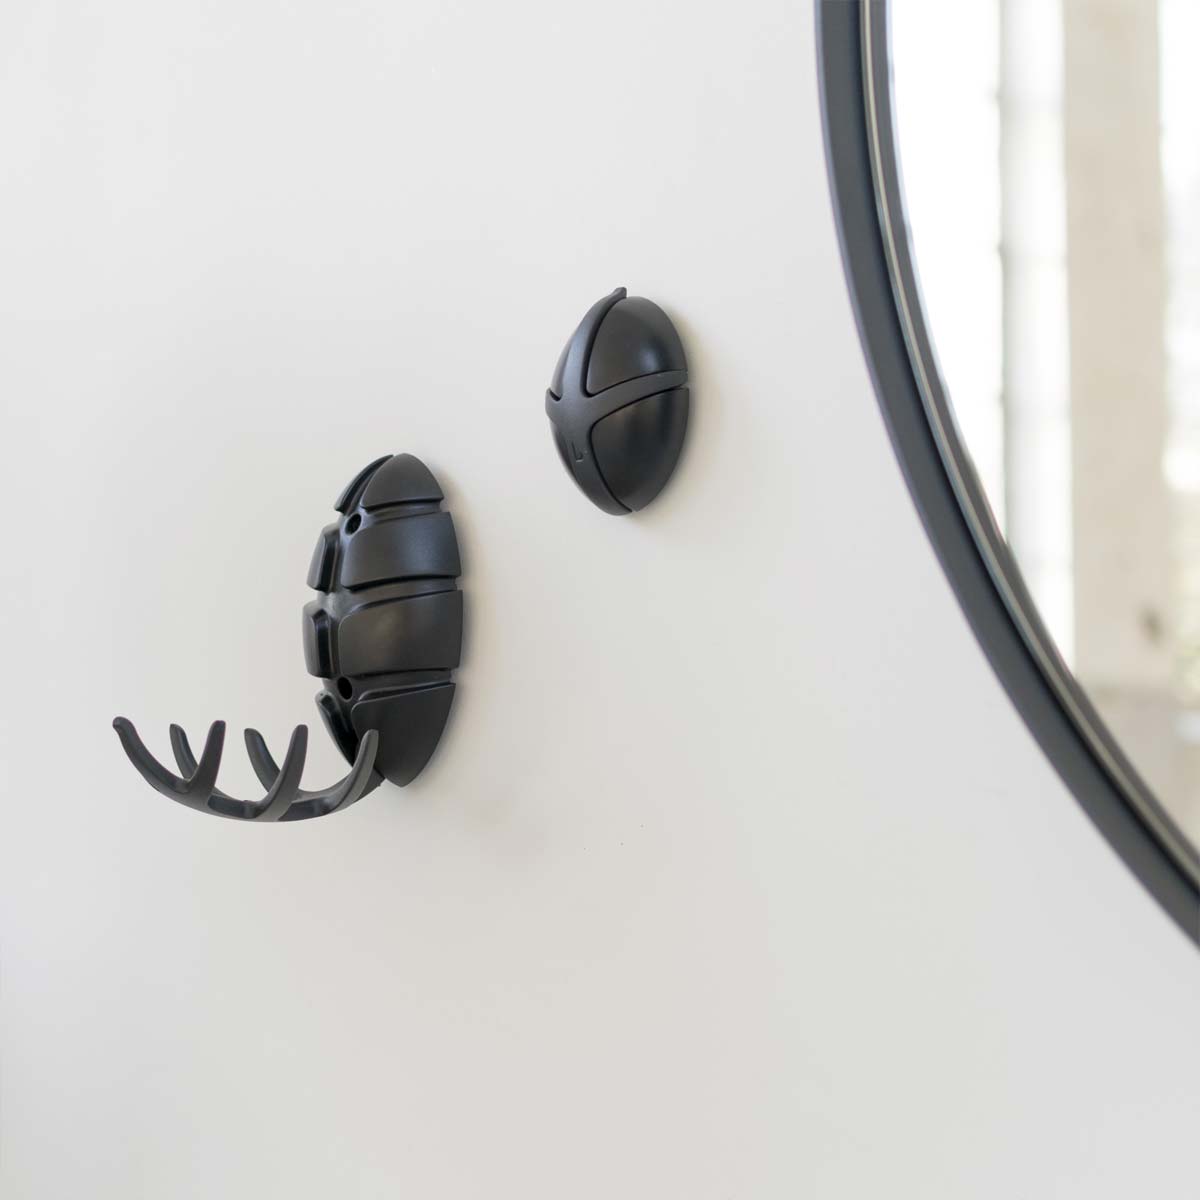 Bug Wandgarderobe – der kleine Käfer ist und leistet großartiges